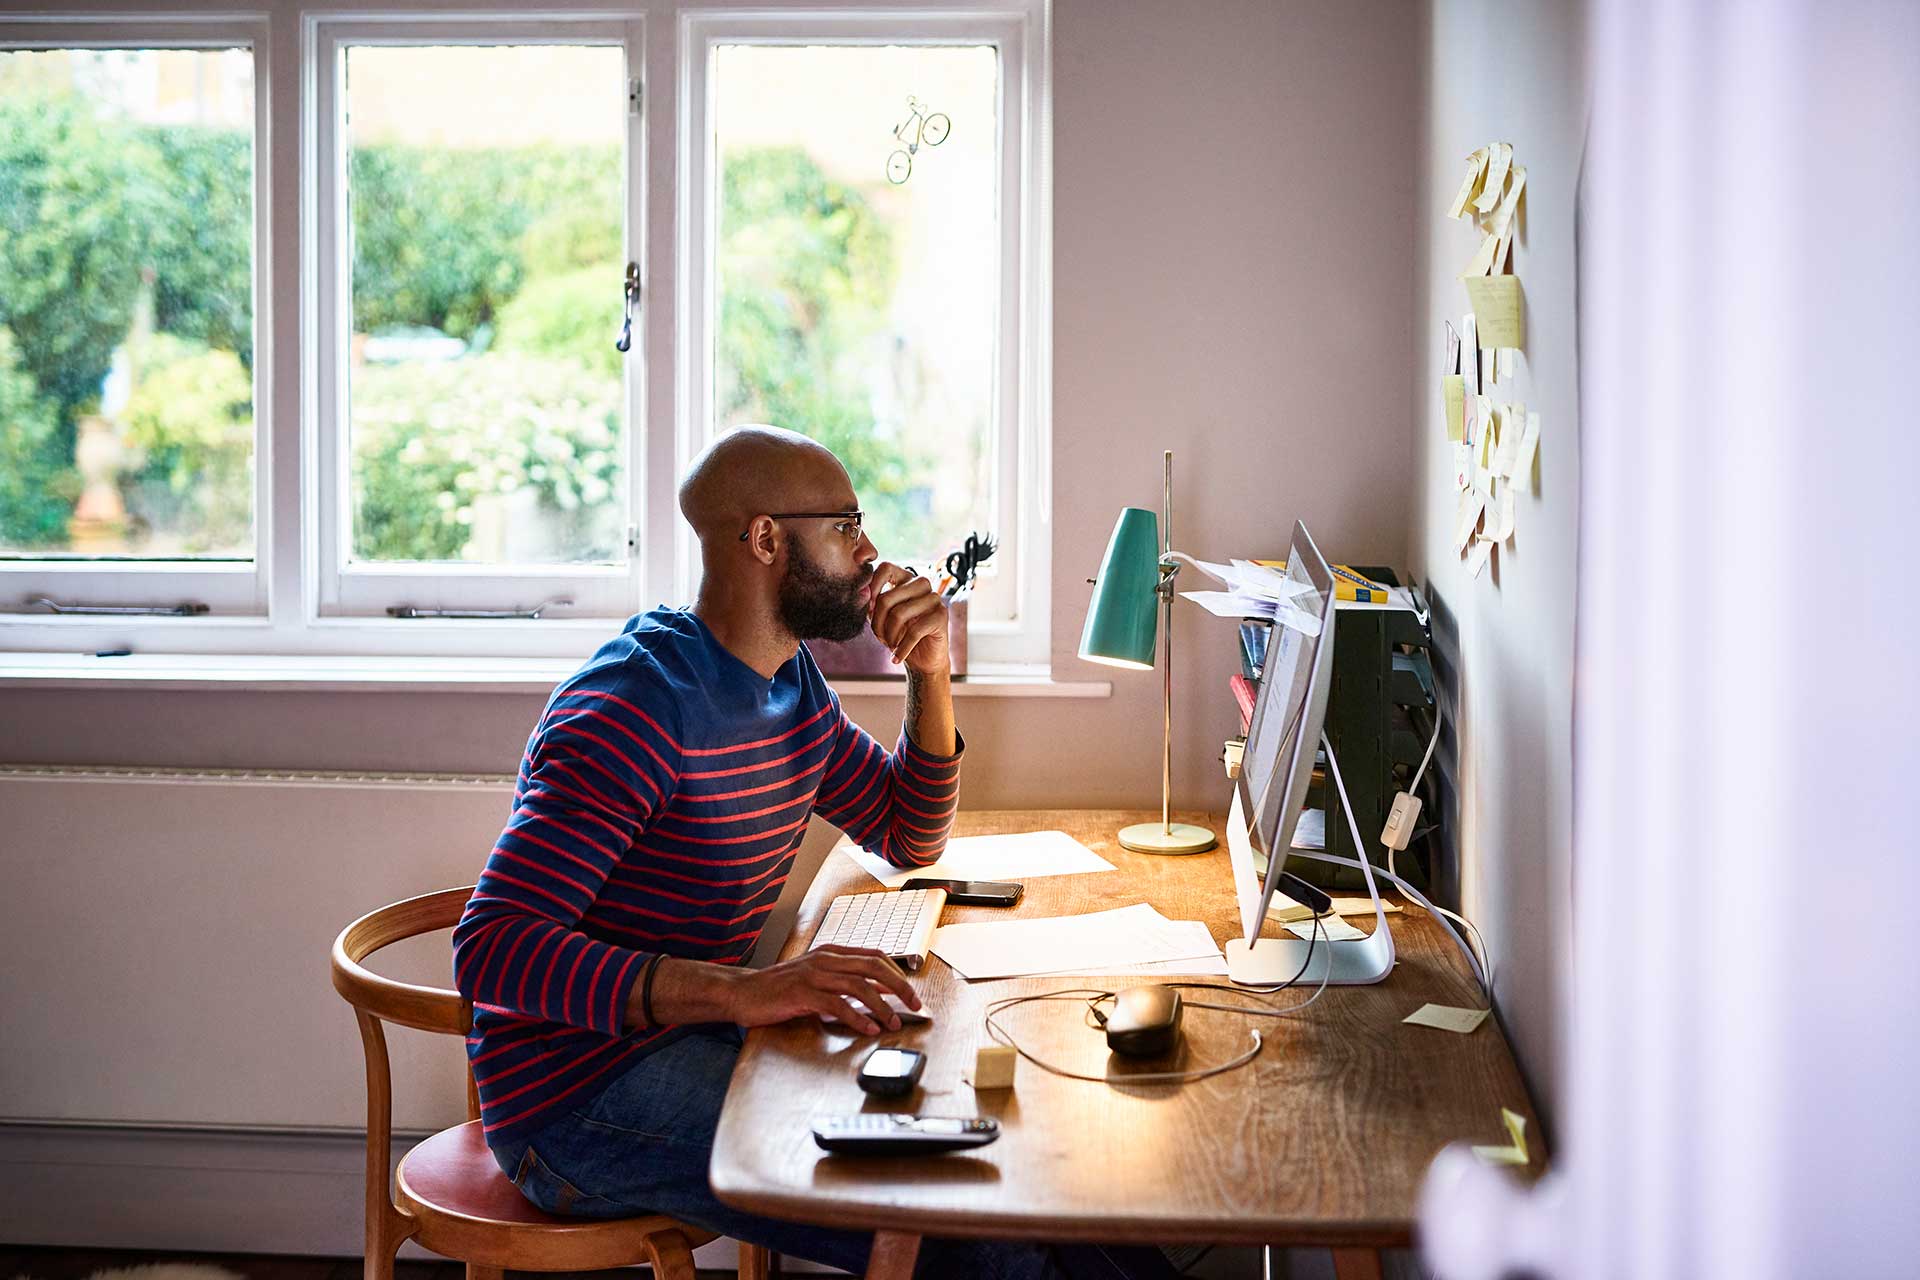 Una persona seduta alla scrivania con una mano sul mouse e lo sguardo fisso sullo schermo del computer mentre cerca di capire perché non riesce a modificare un PDF.